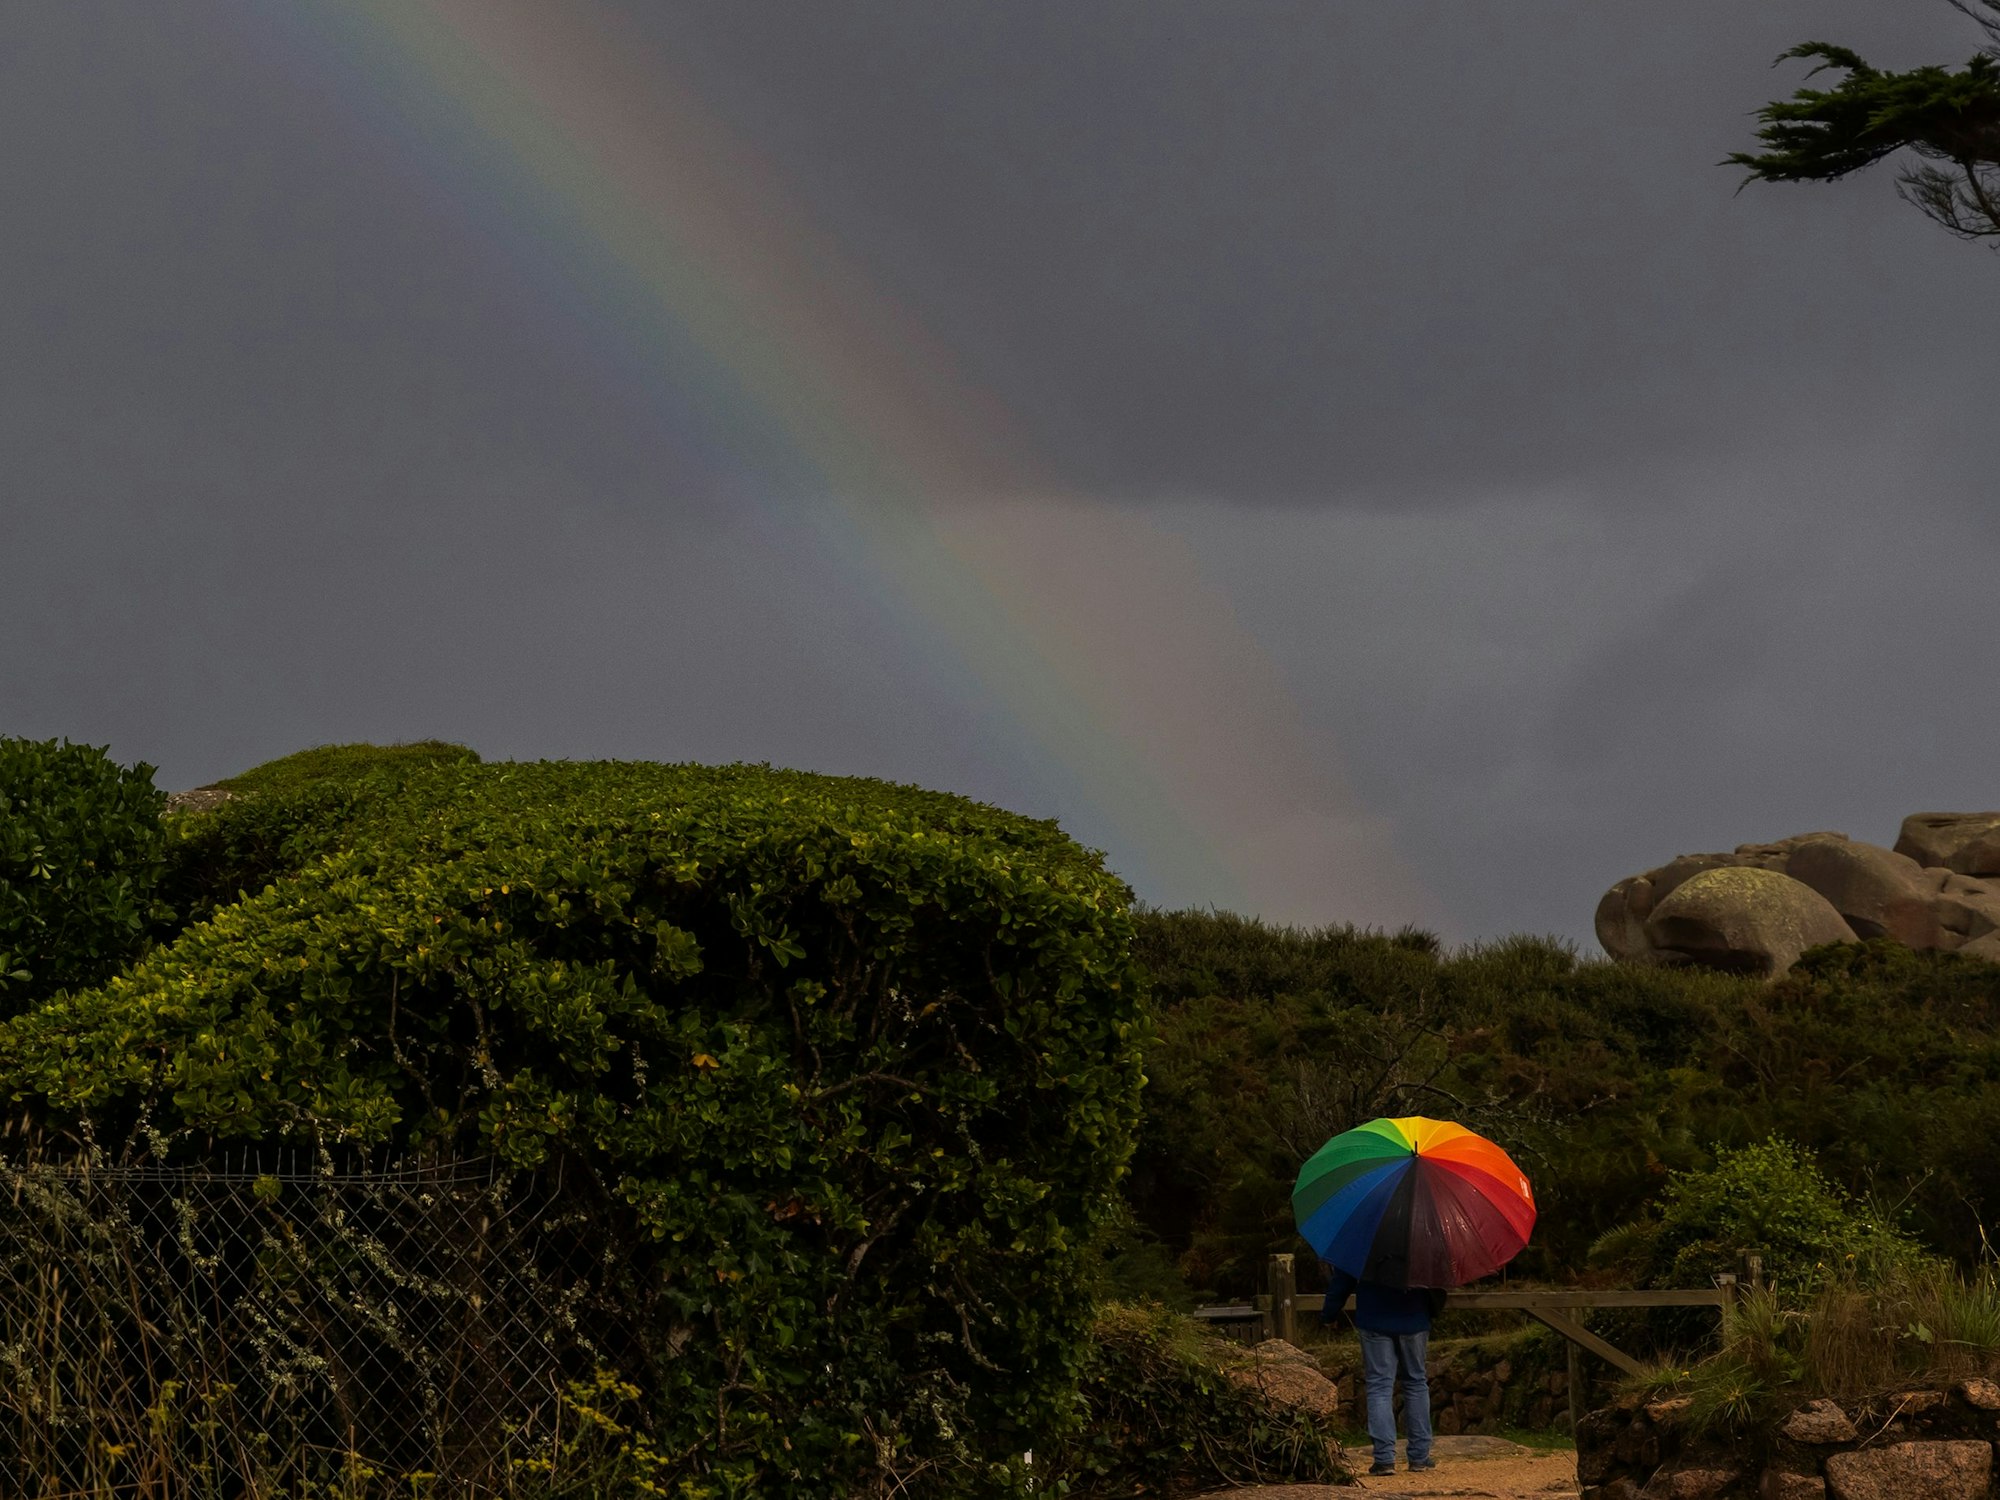 An einem grauen Himmel ist ein Regenbogen zu erkennen. Am Ende des Regenbogens steht eine Person unter einem Schirm in Regenbogenfarben.